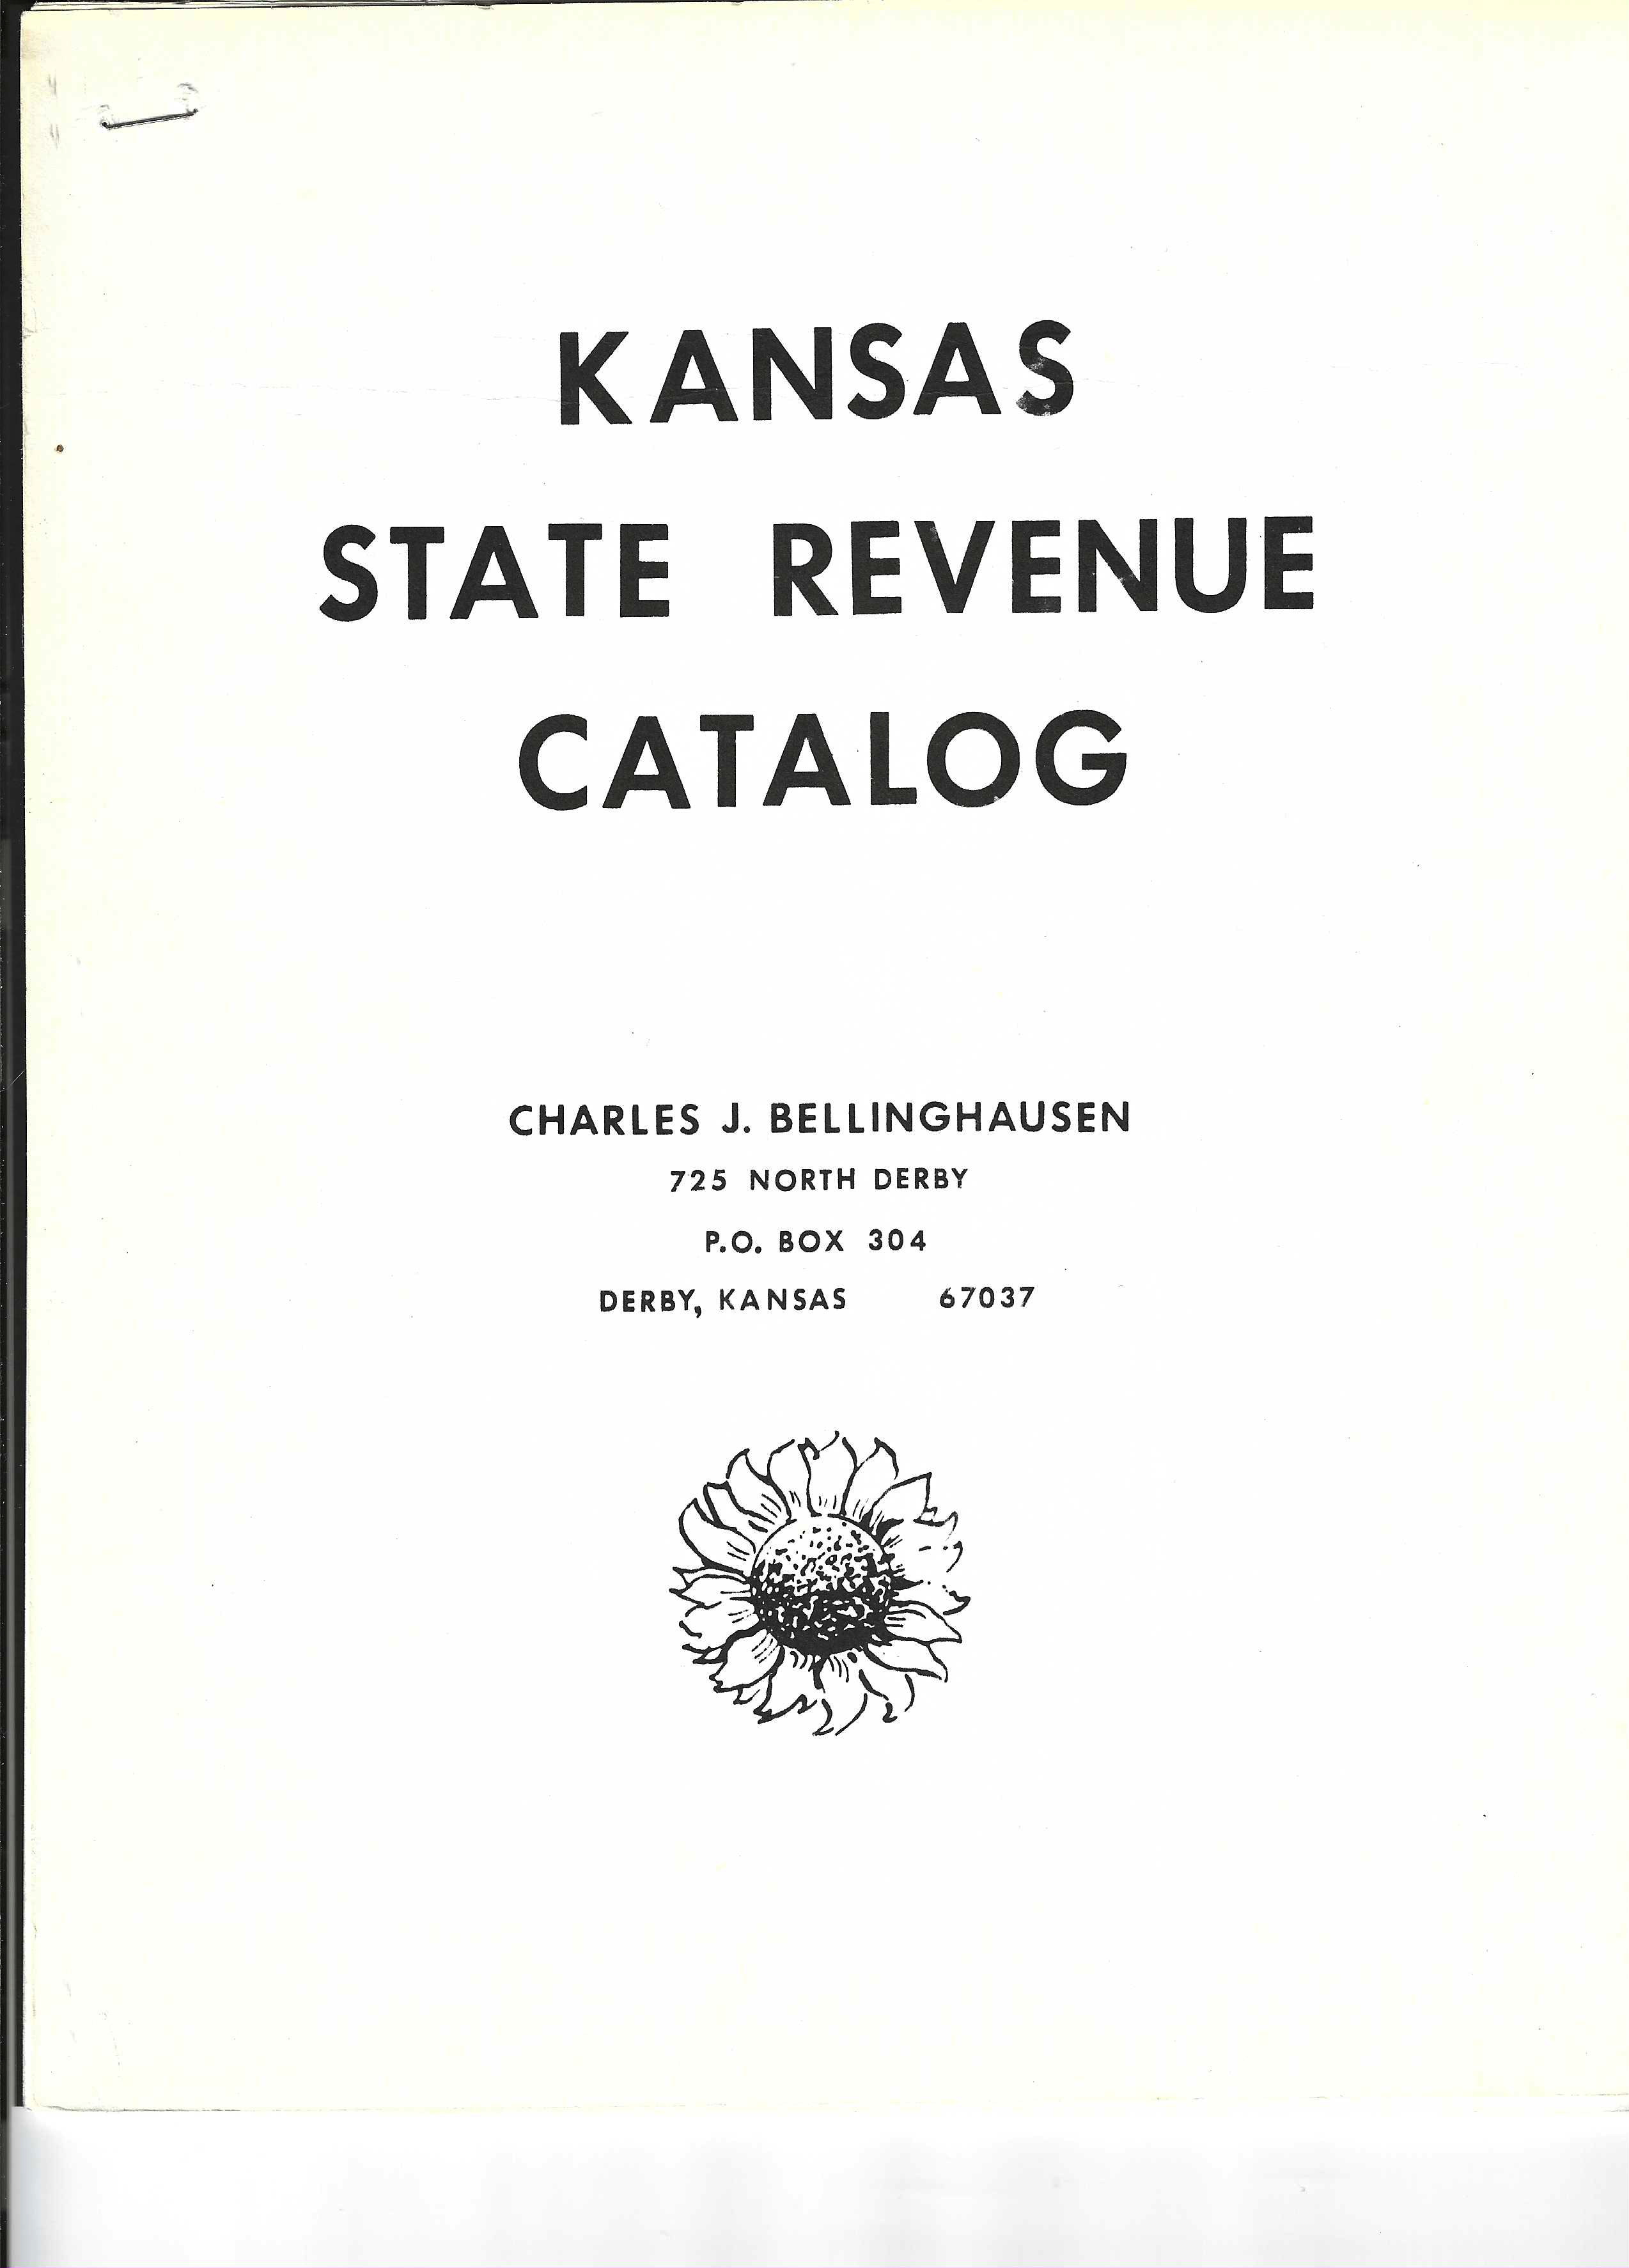 publication Kansas State Revenue Catalog by Charles Bellinghausen 1971